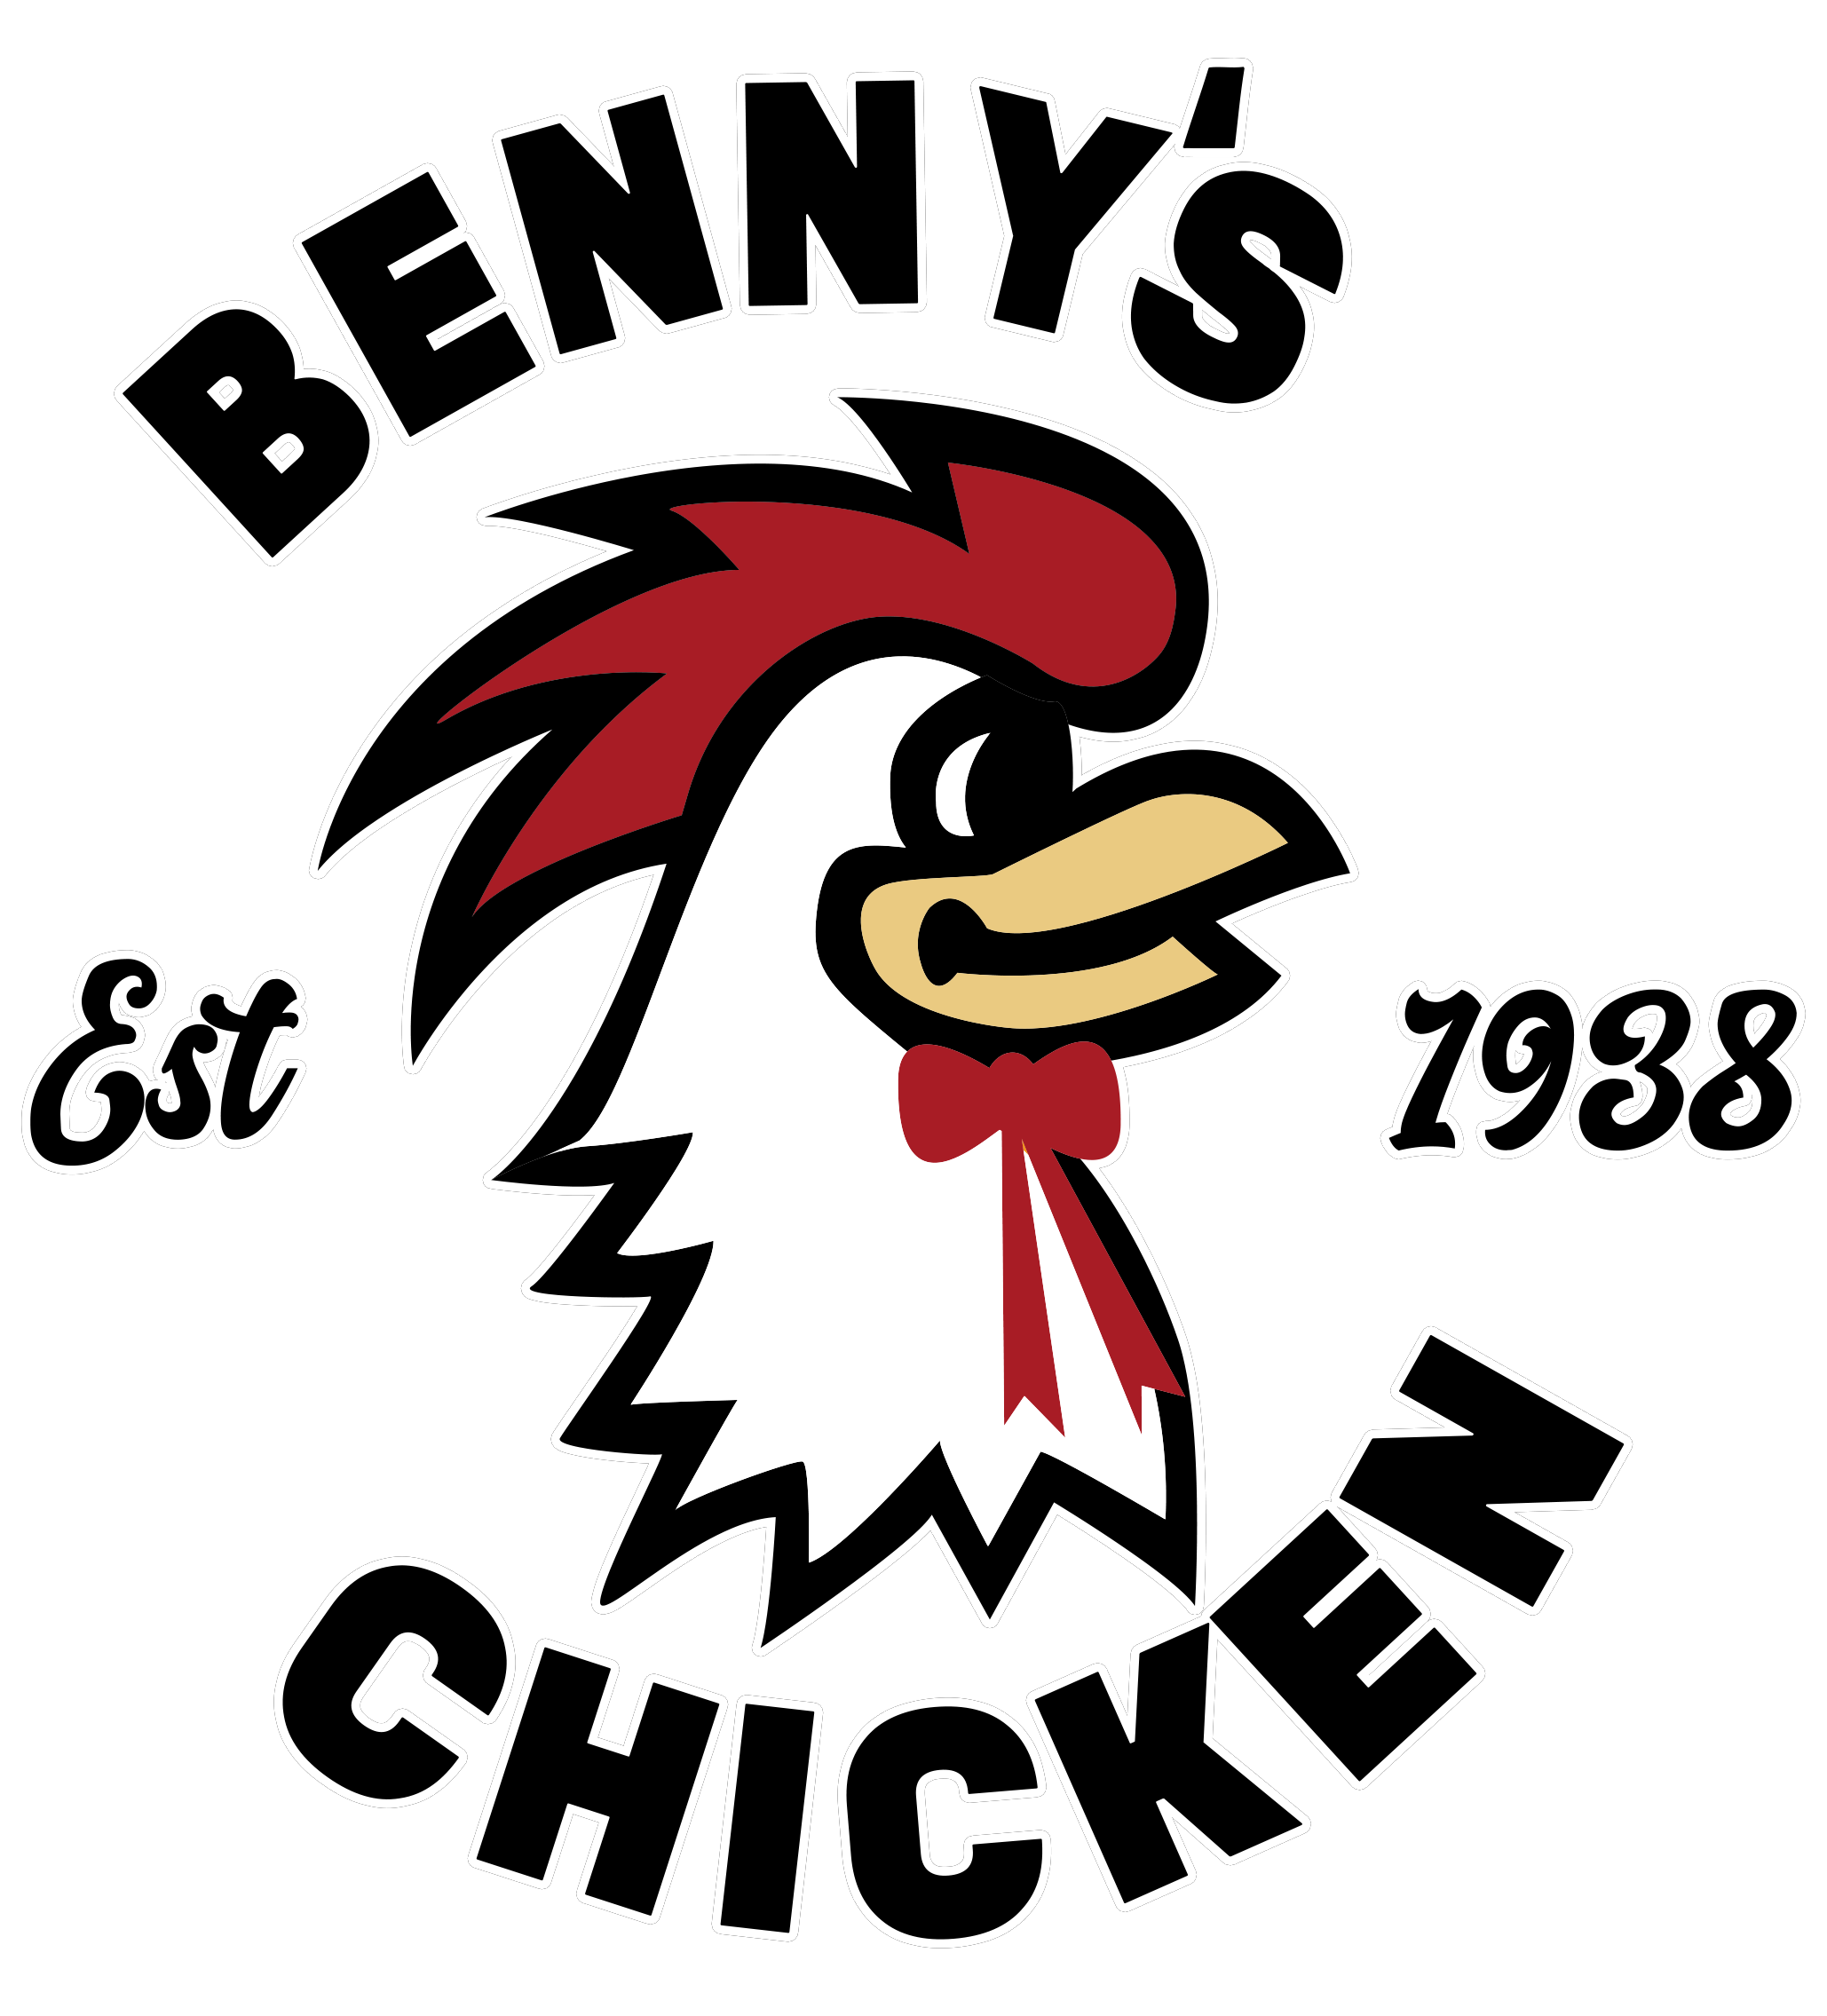 Benny's Chicken Logo